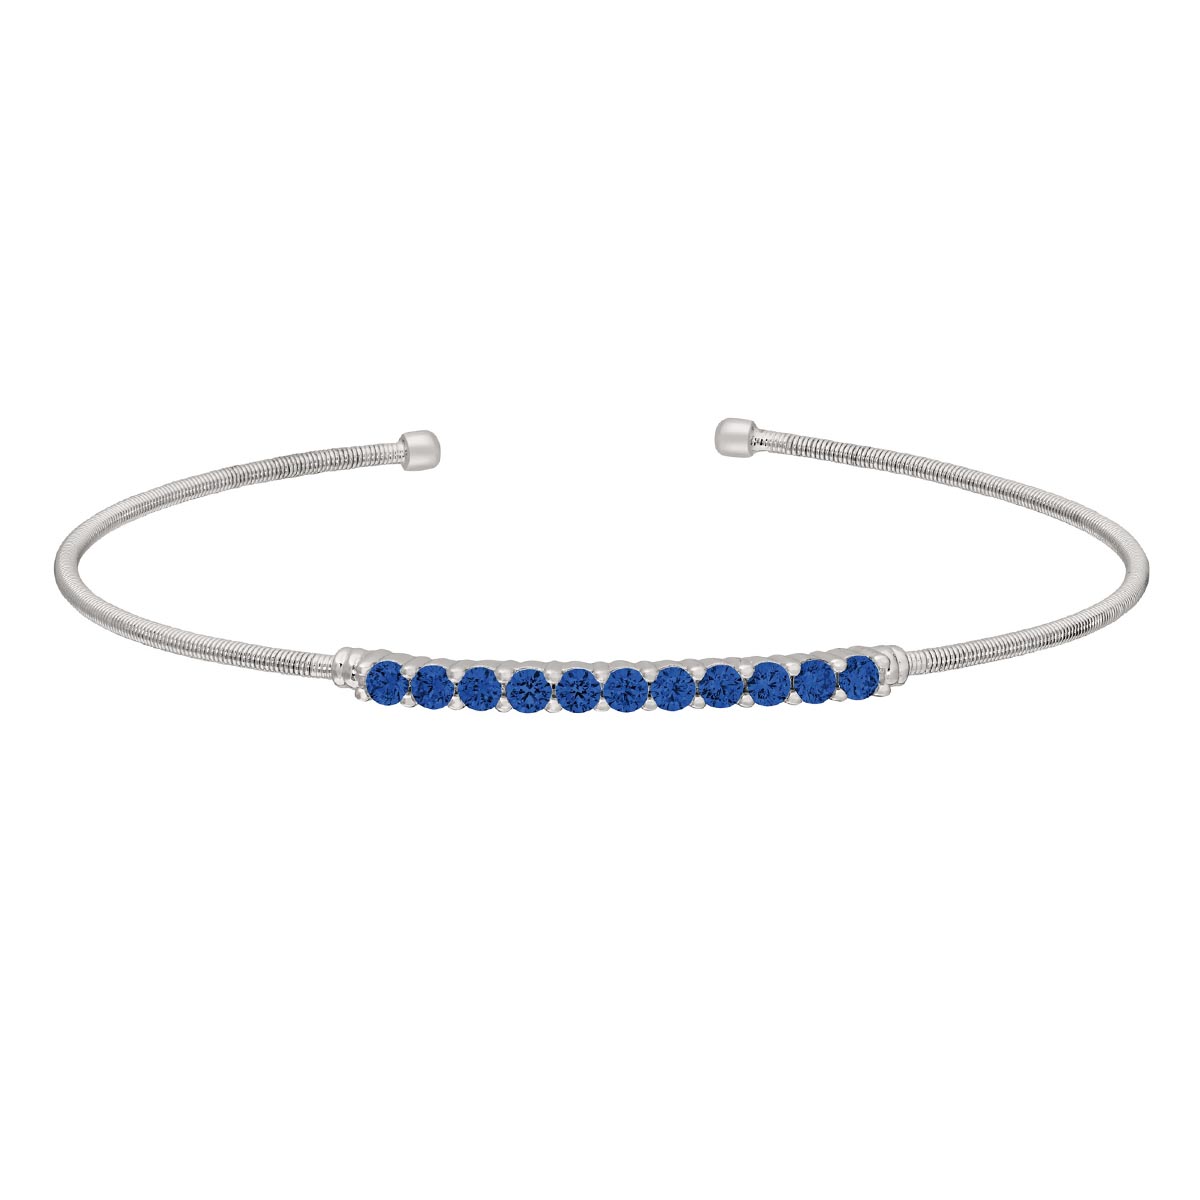 Bella Cavo Blue Cubic Zirconia Flexible Cuff Bracelet in Sterling Silver